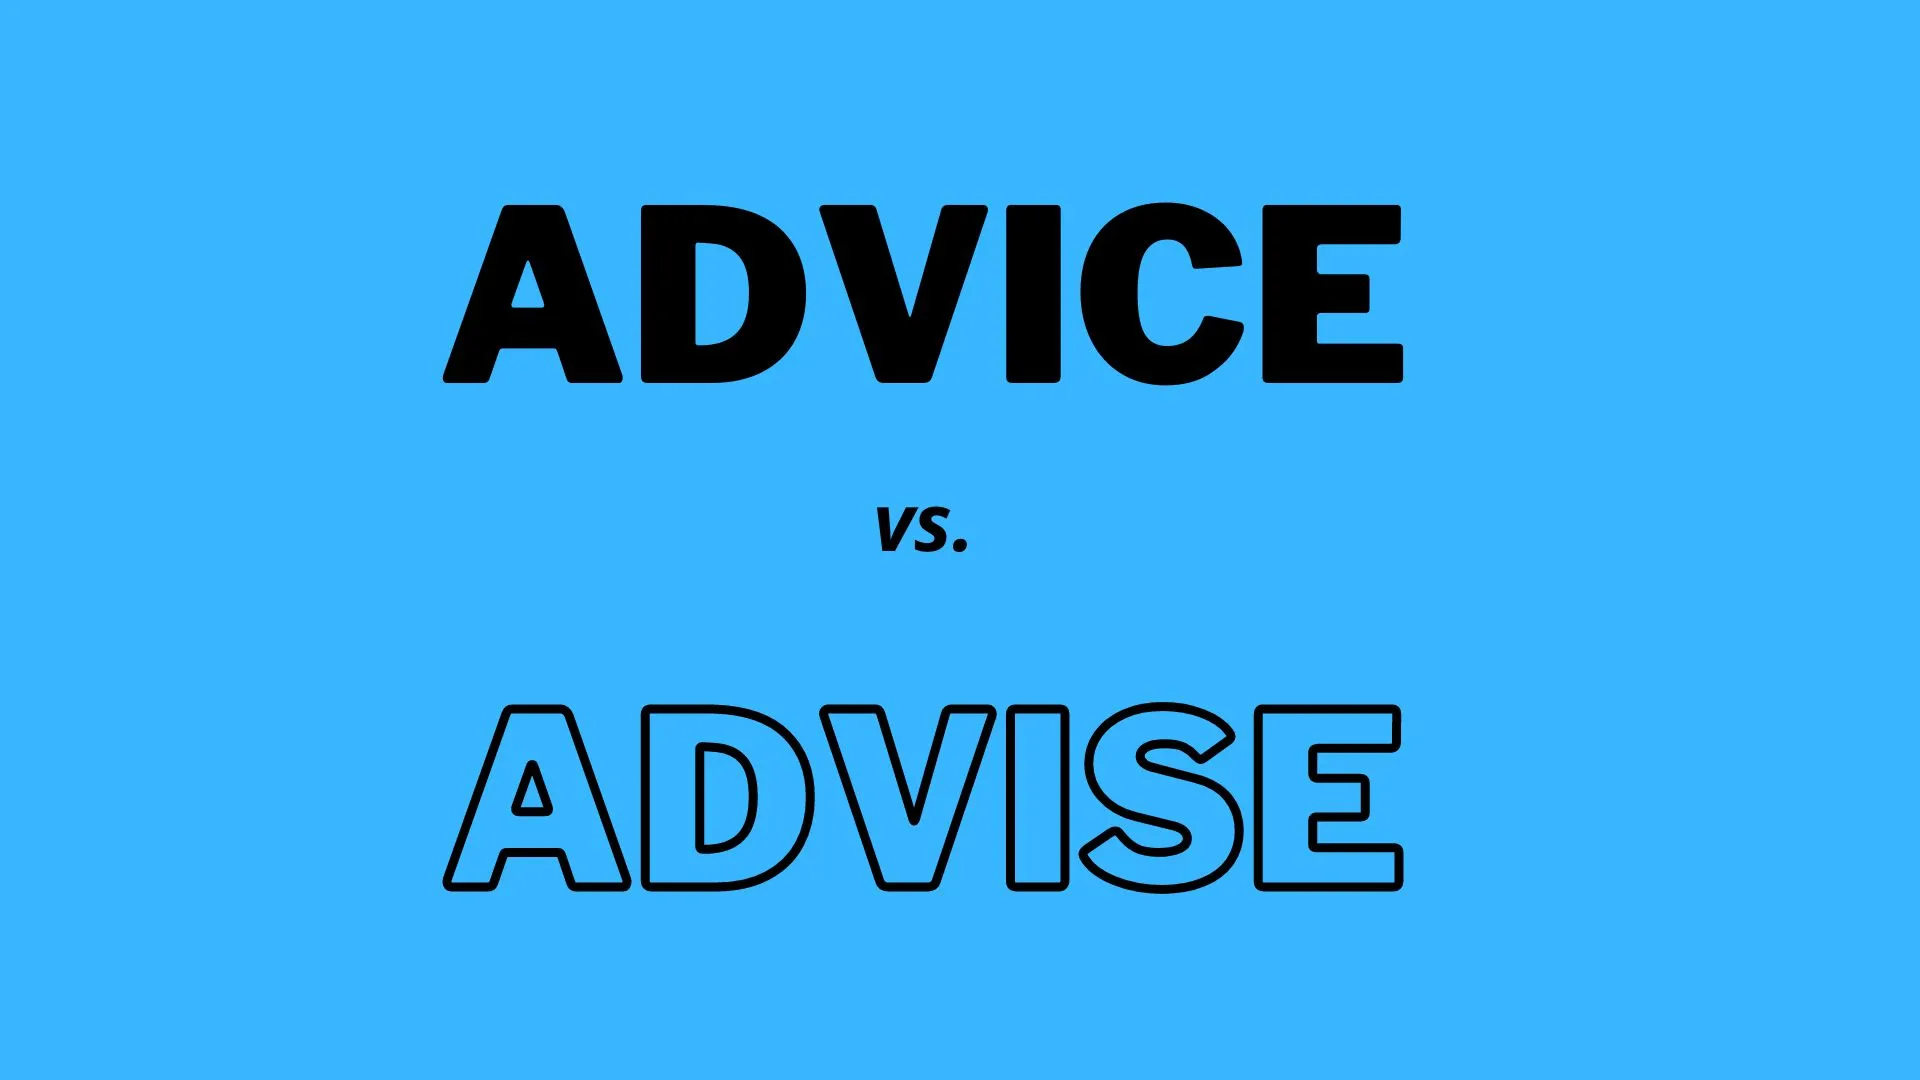 "Advice" は指導や推奨を意味する名詞で、"advise" は助言をするという意味の動詞です。